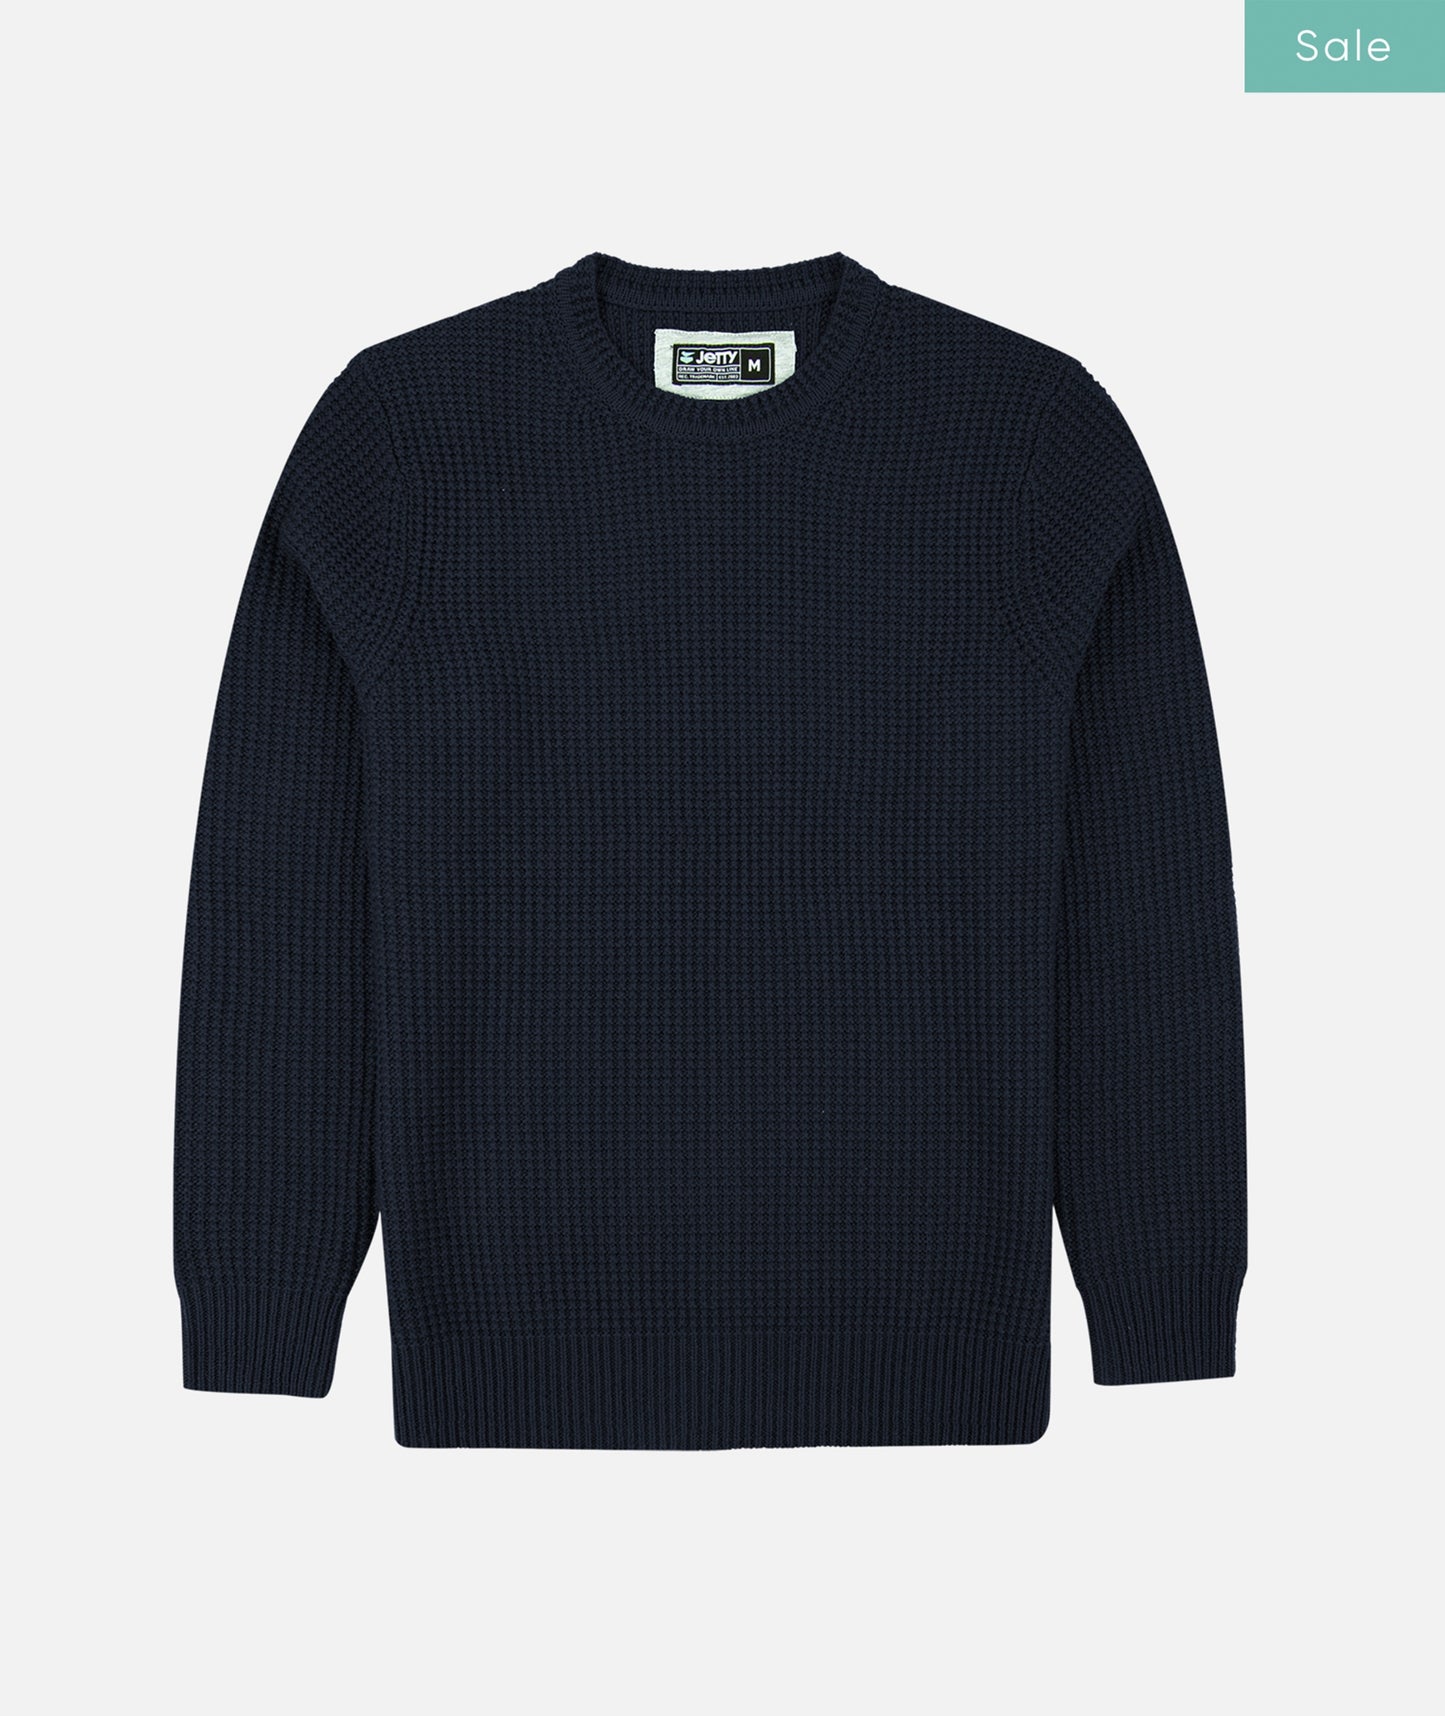 El suéter Paragon - Azul marino